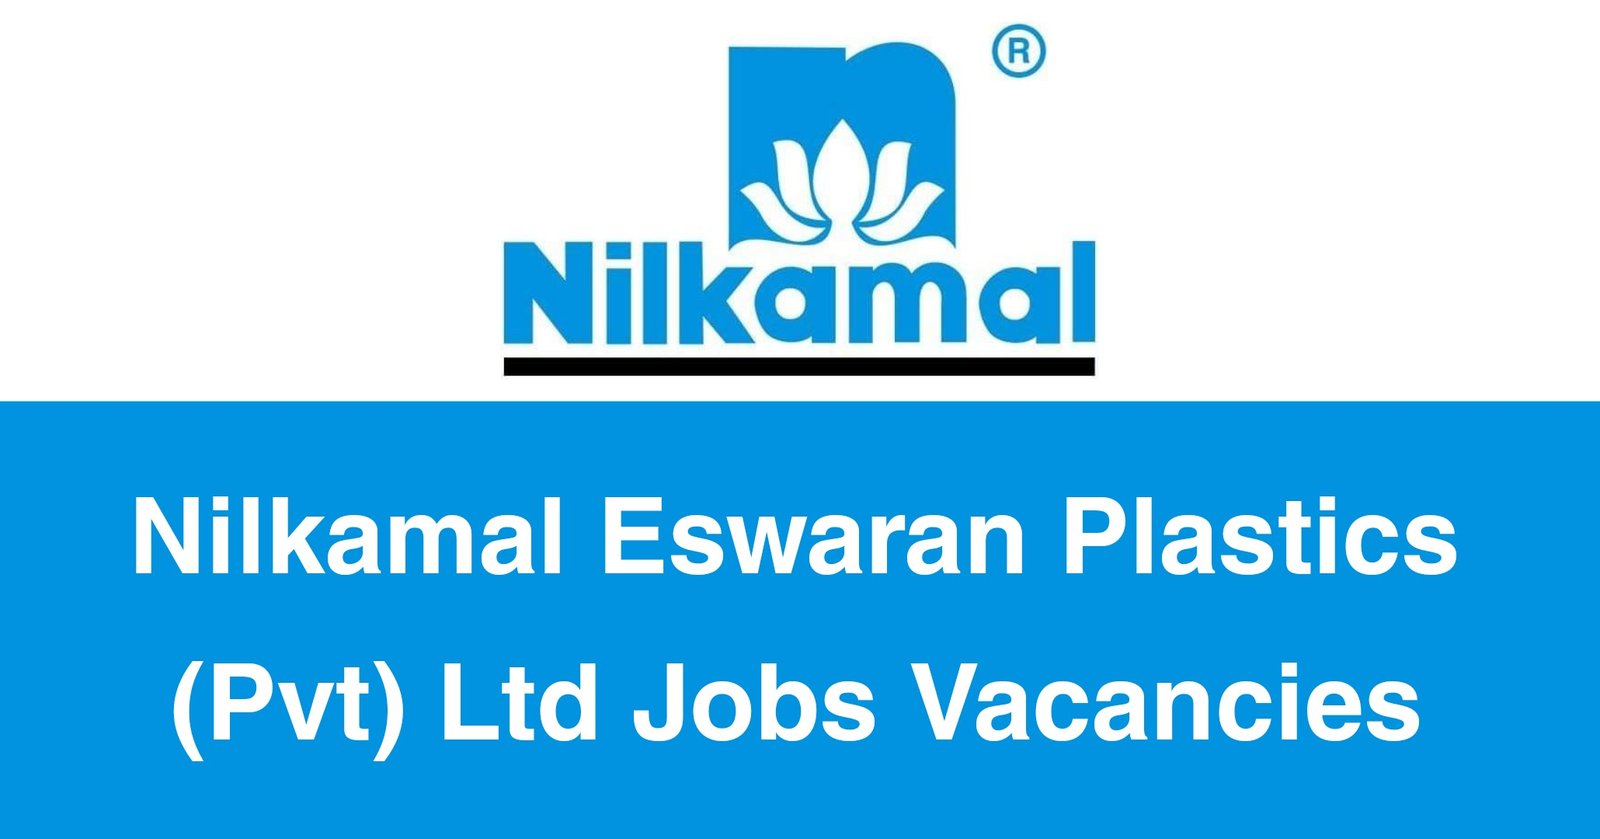 Nilkamal Eswaran Plastics (Pvt) Ltd Jobs Vacancies